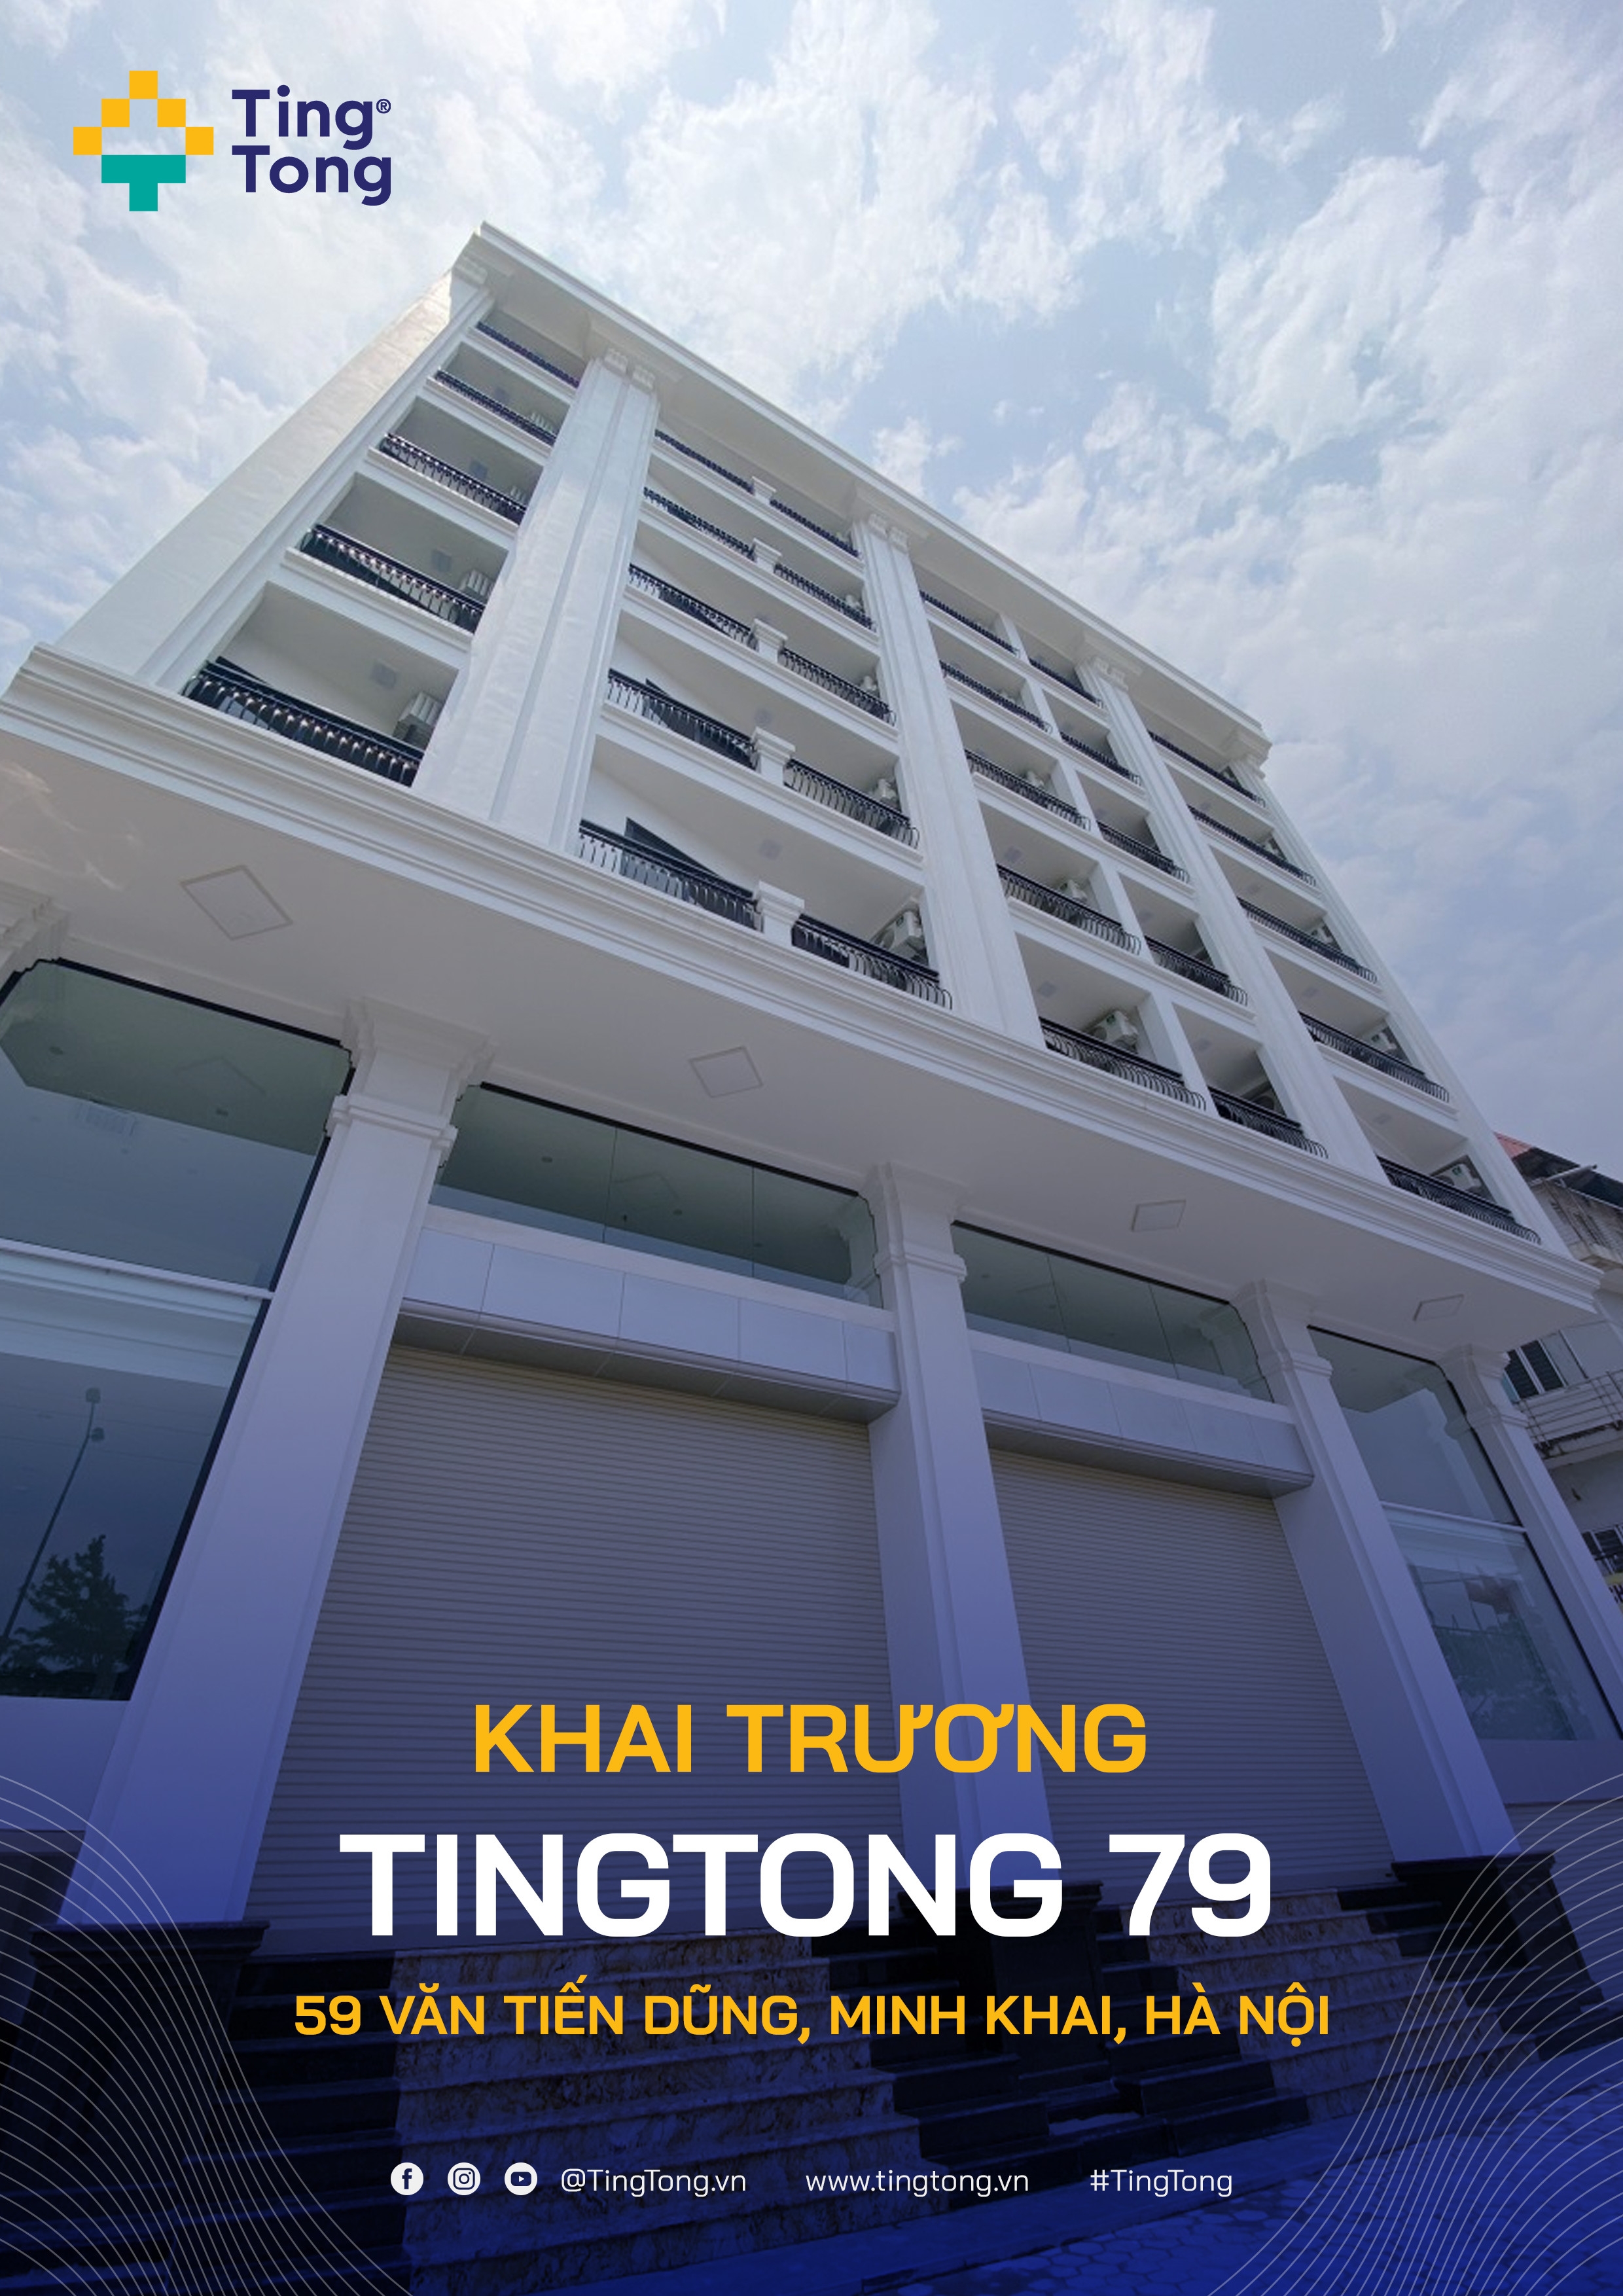 Chung cư cao cấp TingTong 79 tại Văn Tiến Dũng chính thức đi vào hoạt động